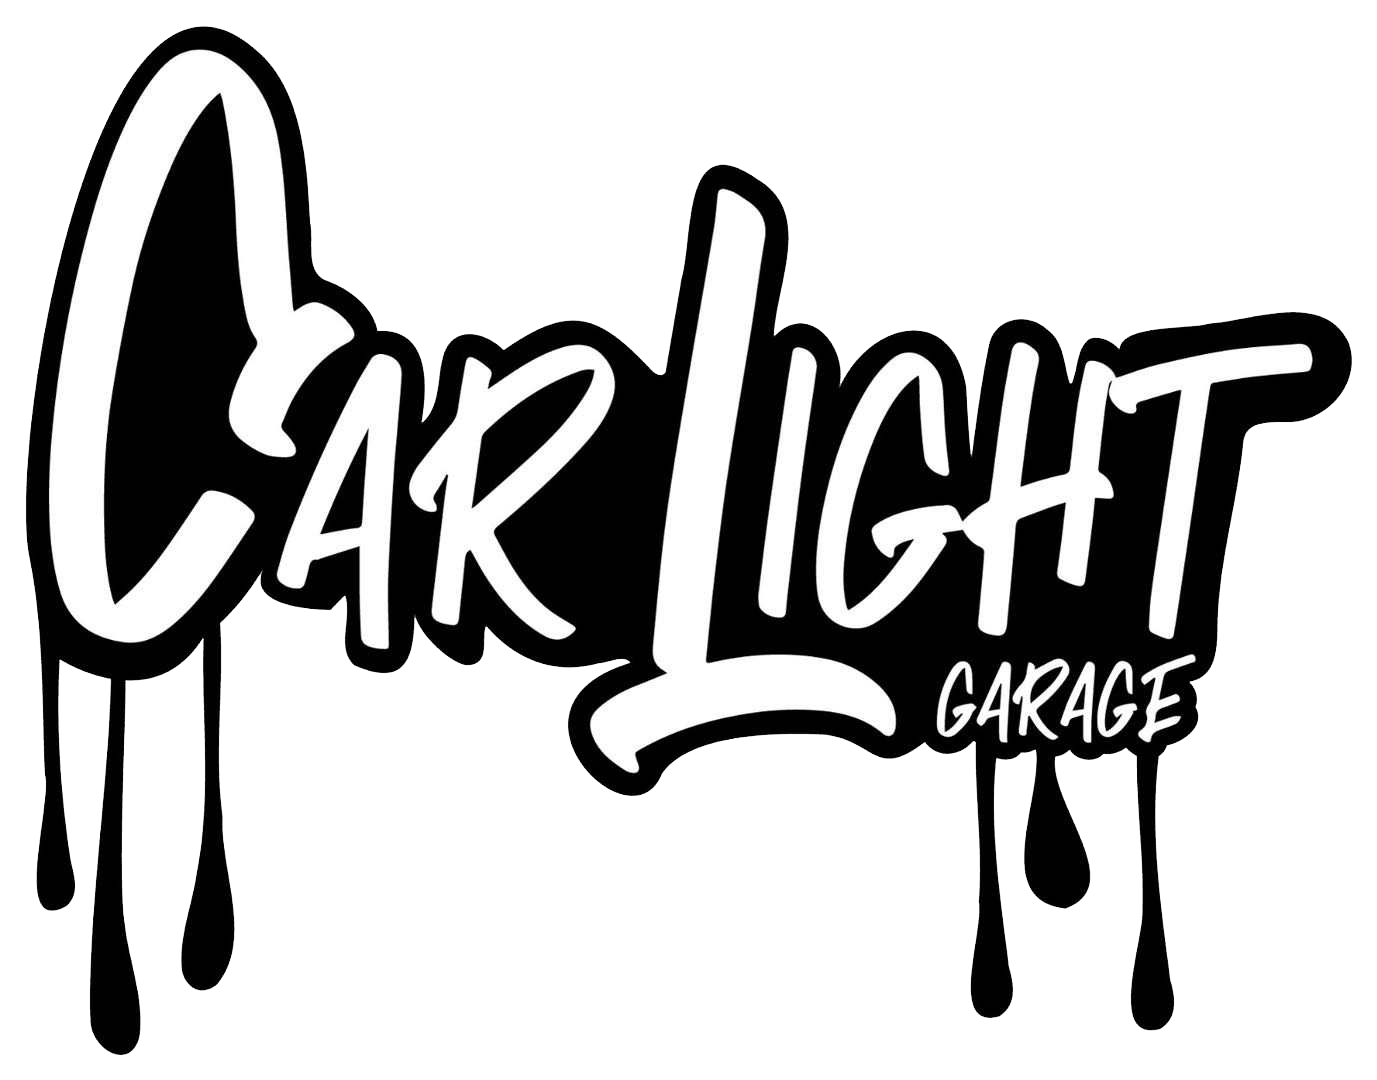 carlightgarage